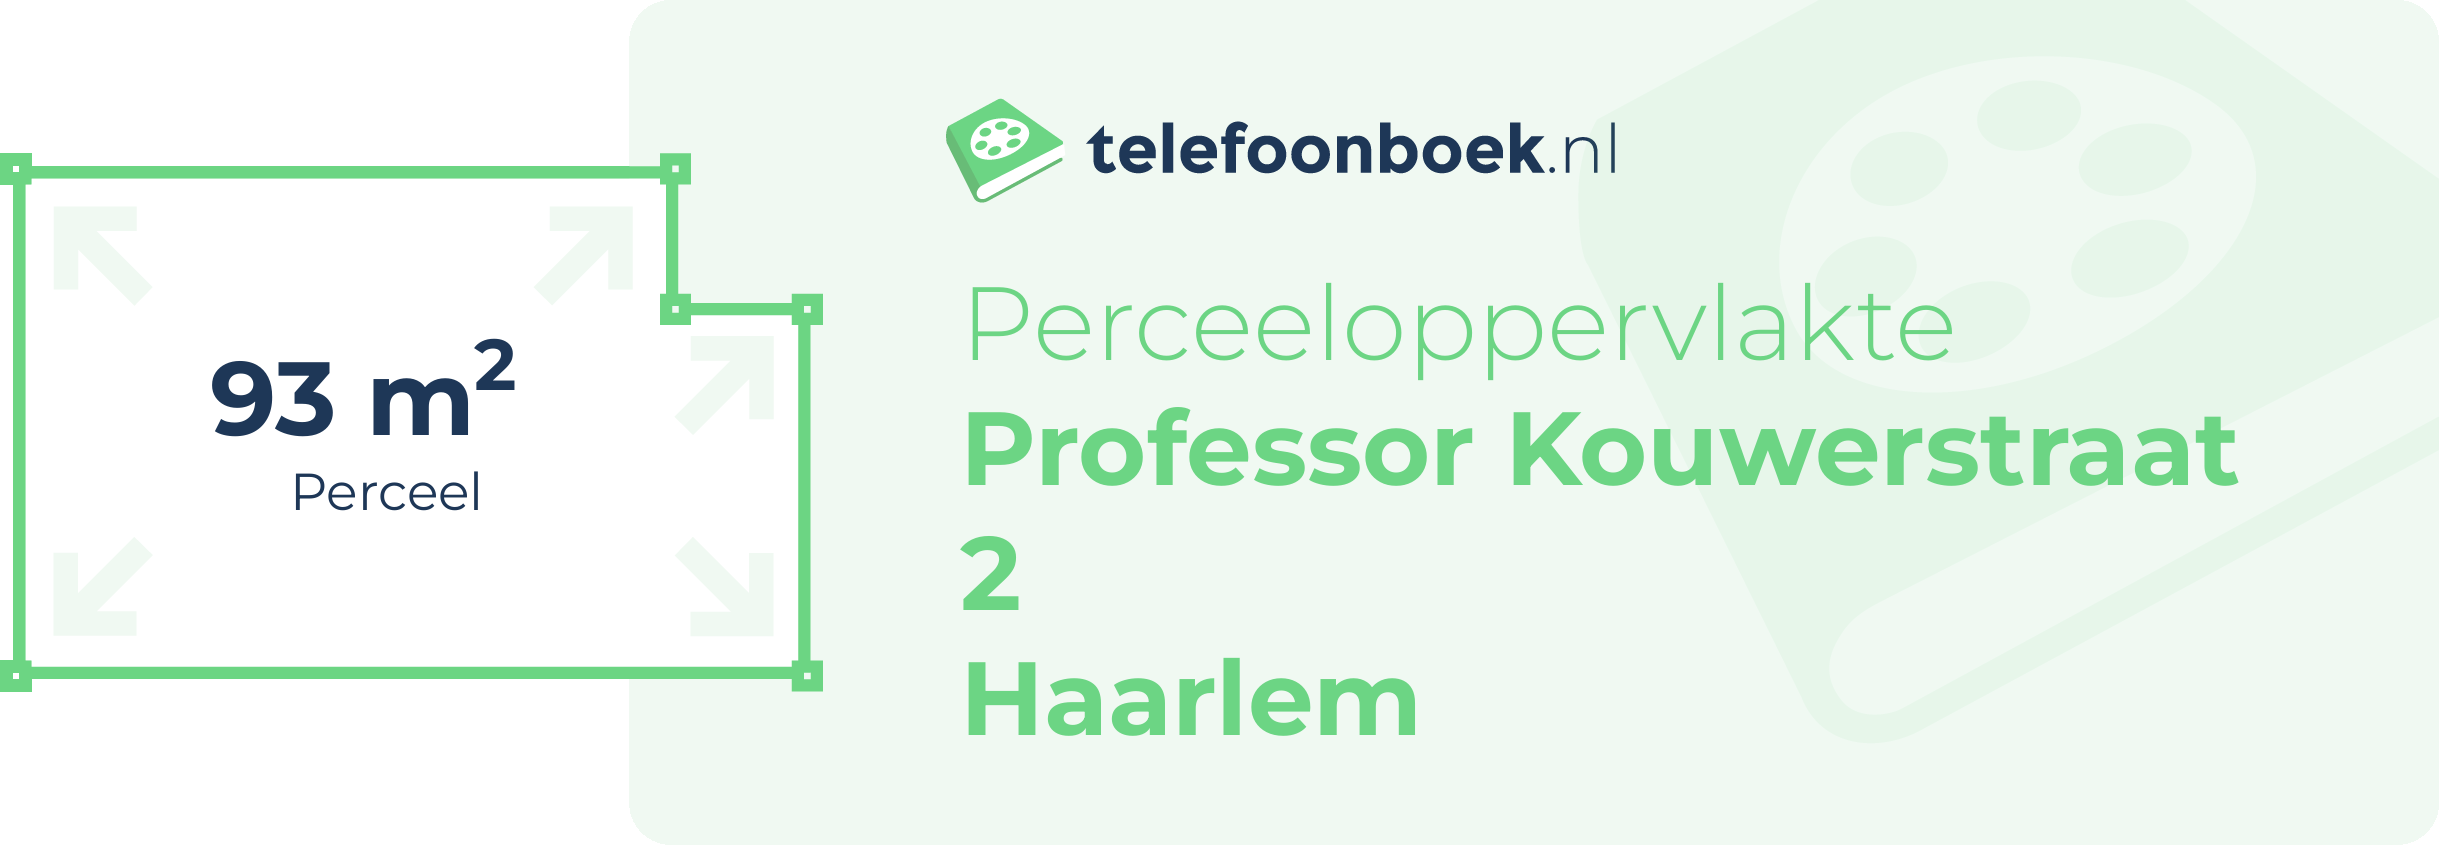 Perceeloppervlakte Professor Kouwerstraat 2 Haarlem